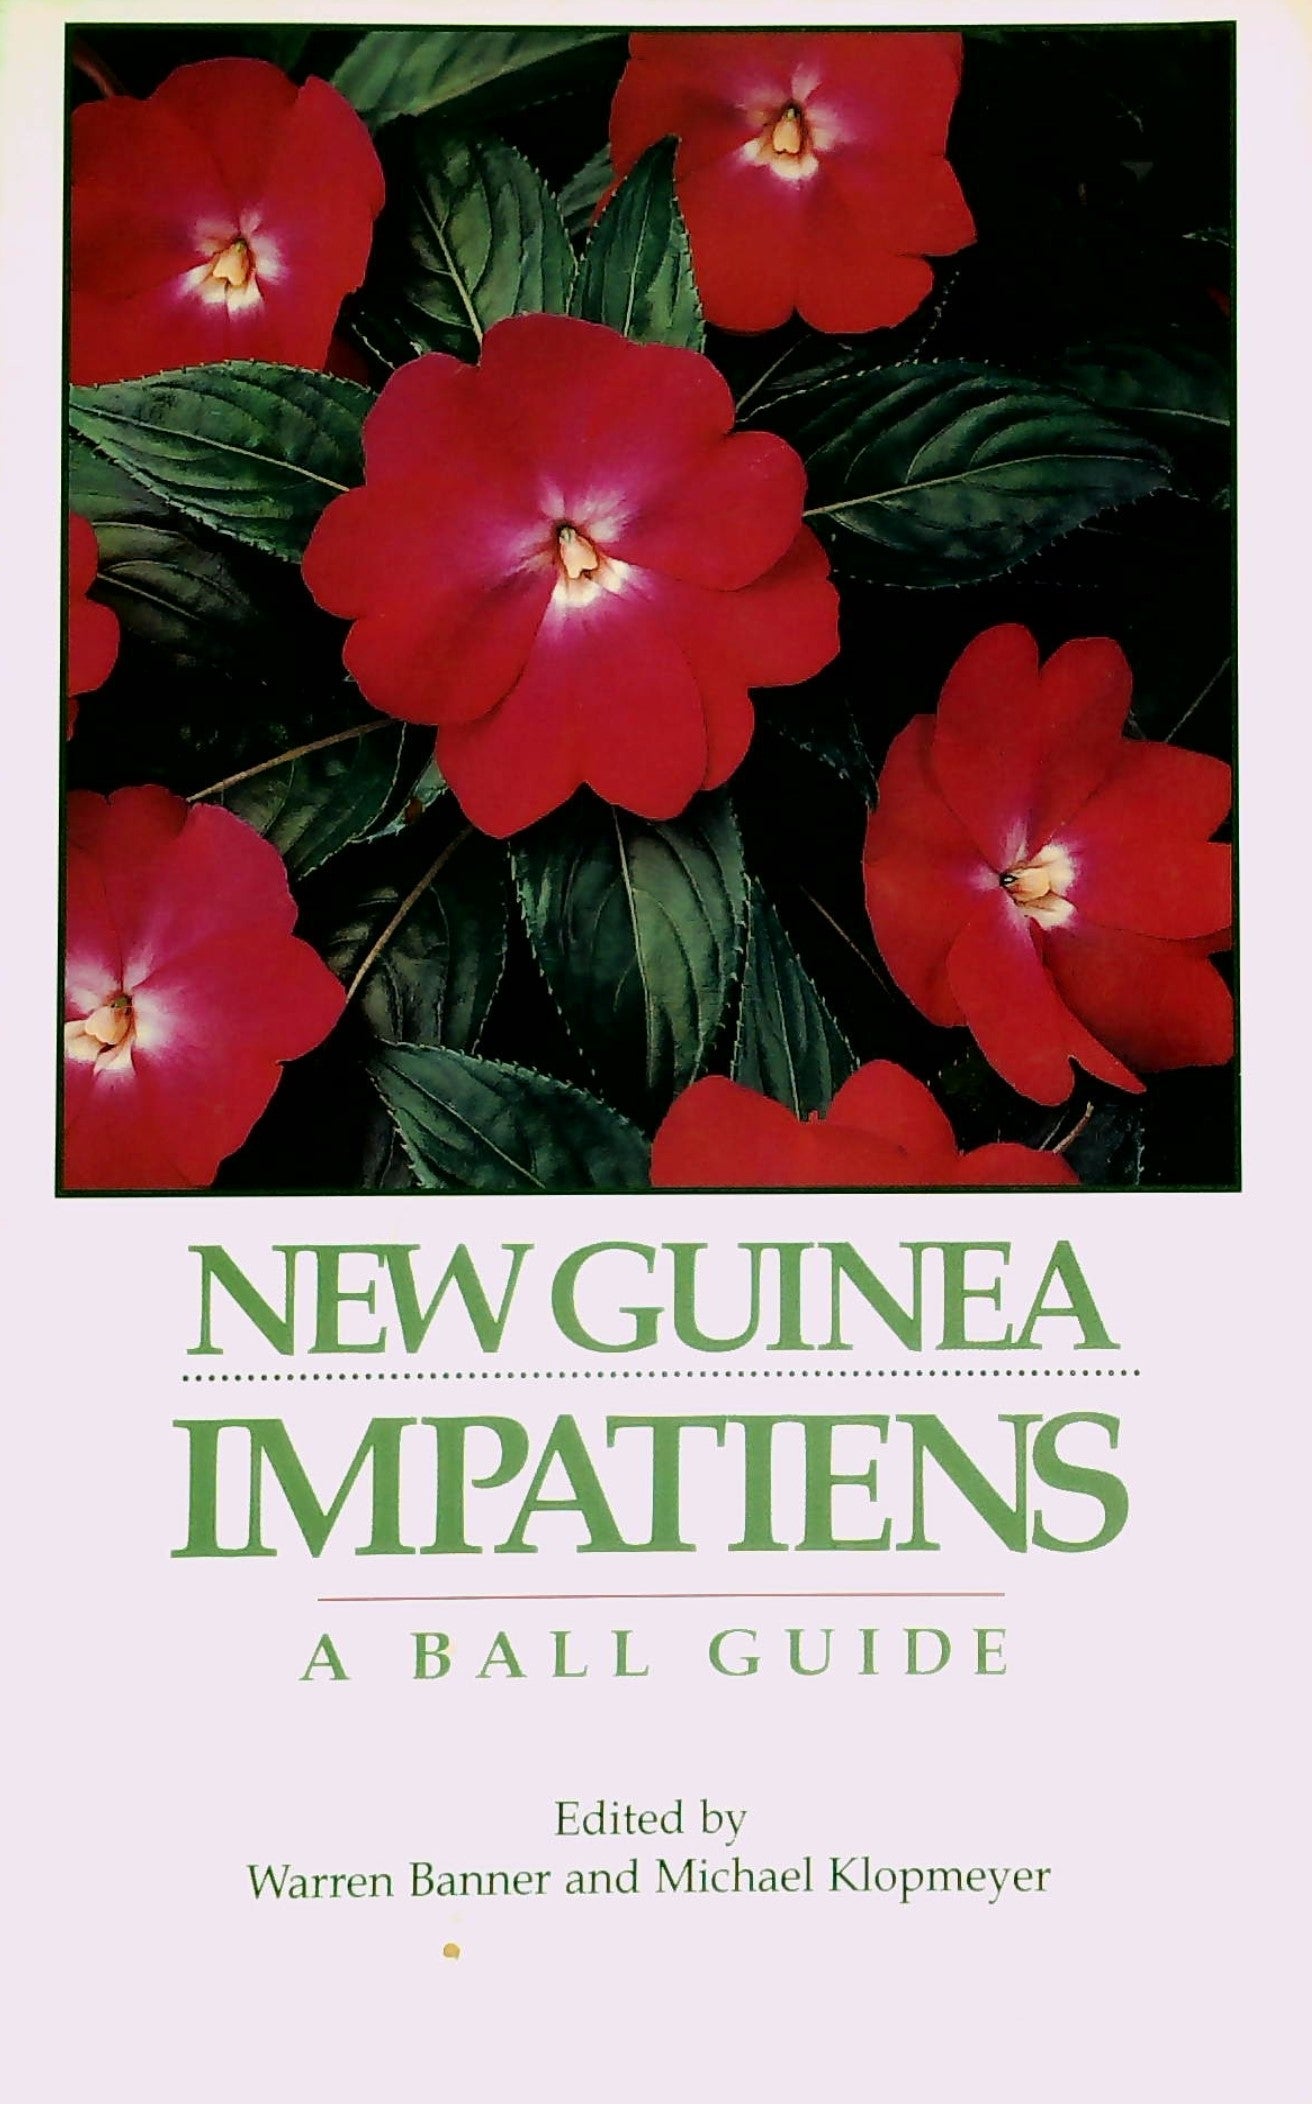 Livre ISBN 1883052076 New Guinea Impatiens: A Ball Guide (Warren Banner)